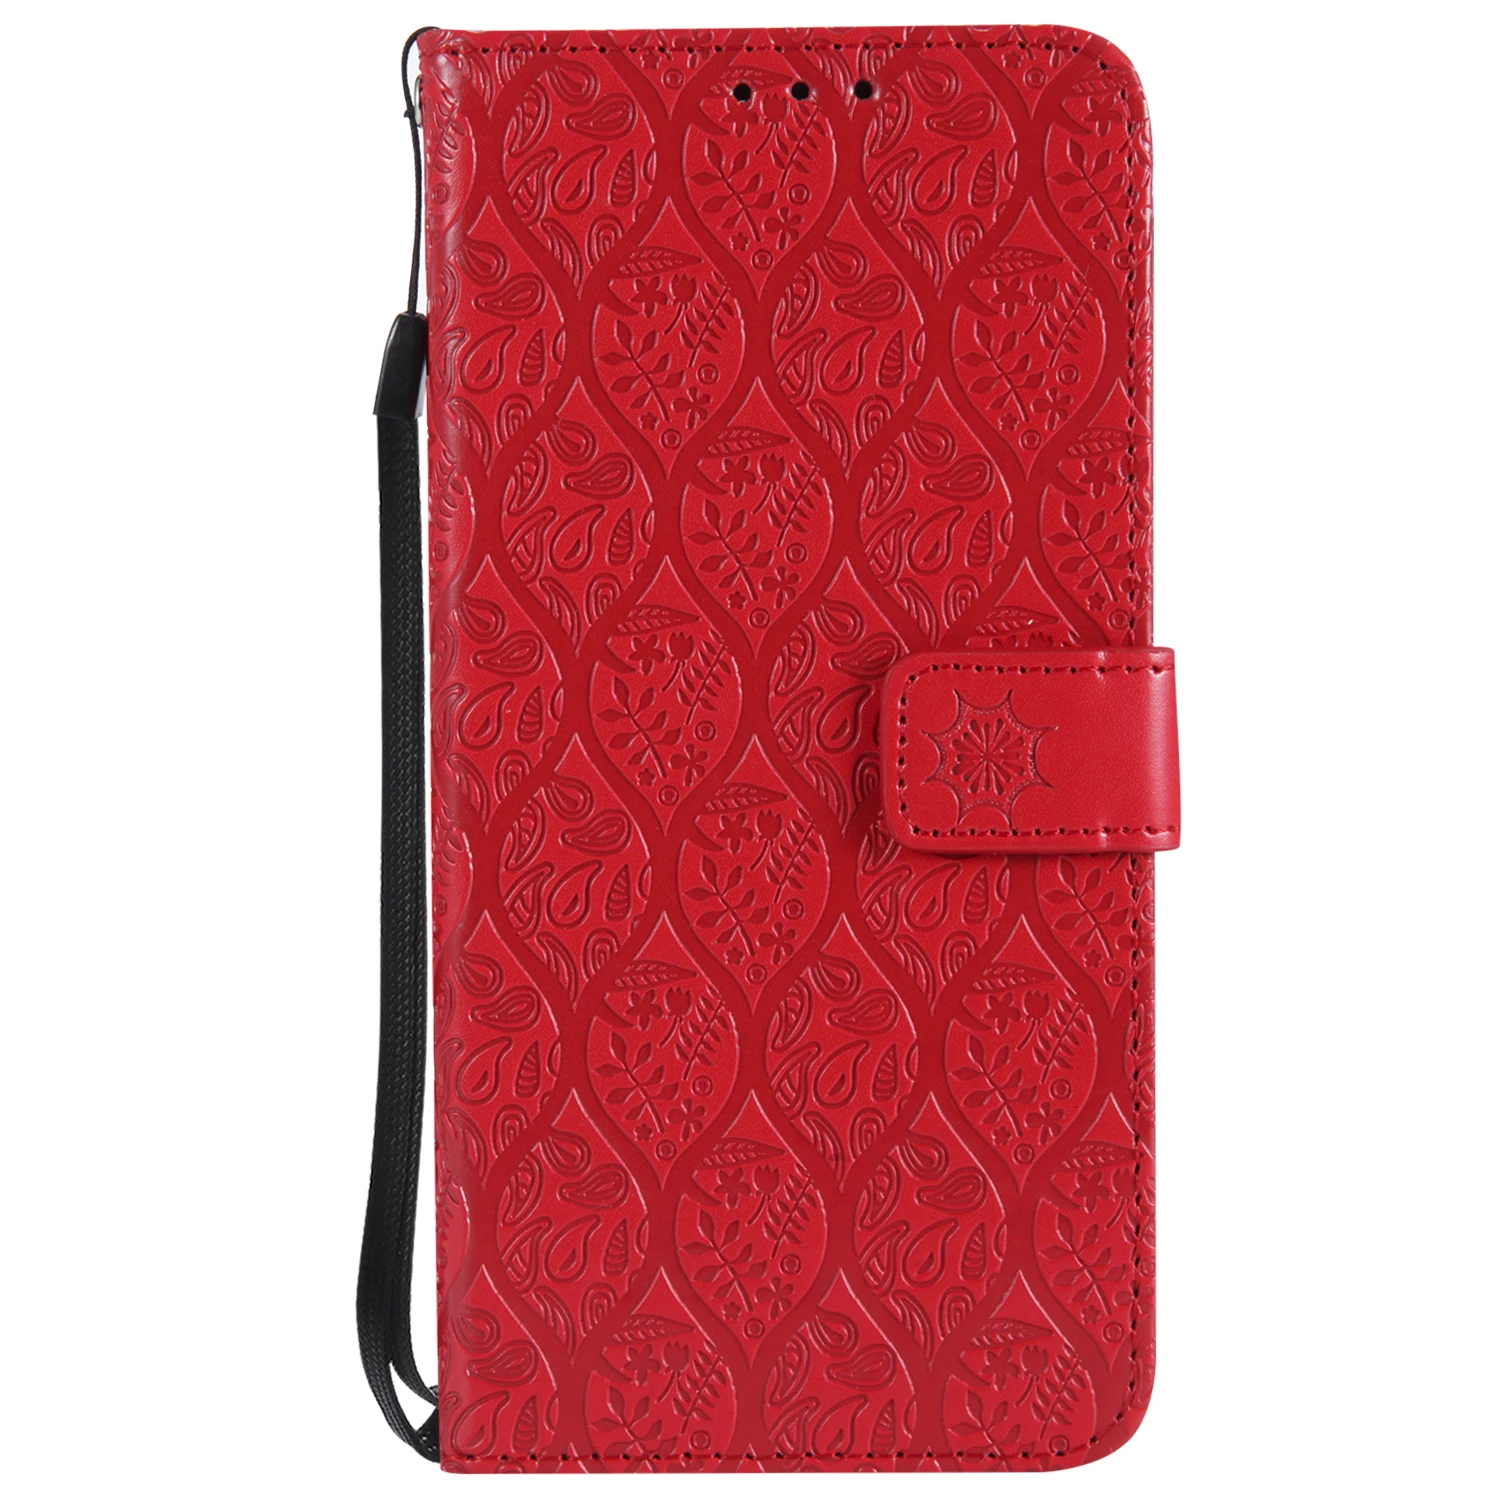 Чехол для Xiaomi Redmi 4A, чехол Xiomi Redmi 4A, кожаный флип-кошелек, подставка, книжка, слот для карт, чехлы для телефонов Xiaomi Redmi 4A 4 A A4, чехол s - Цвет: Red